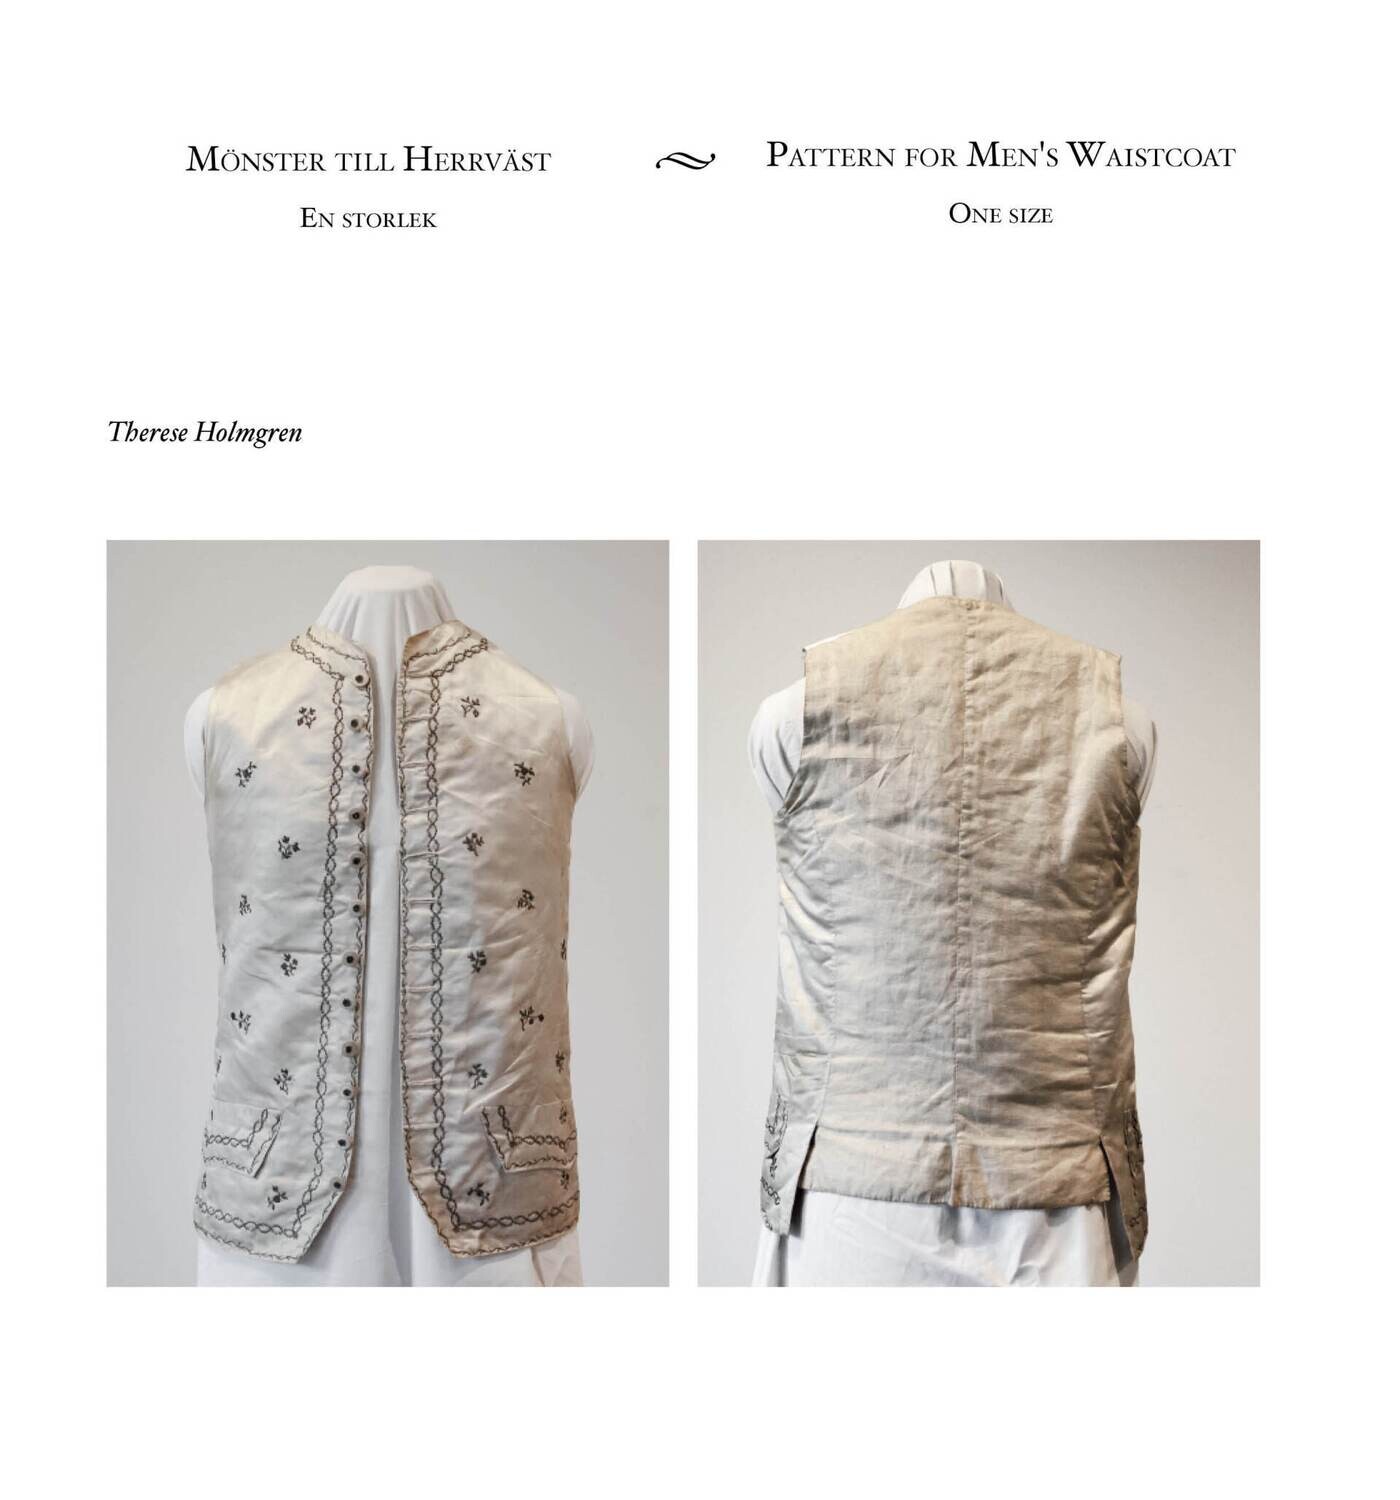 Pattern for Men's Waistcoat